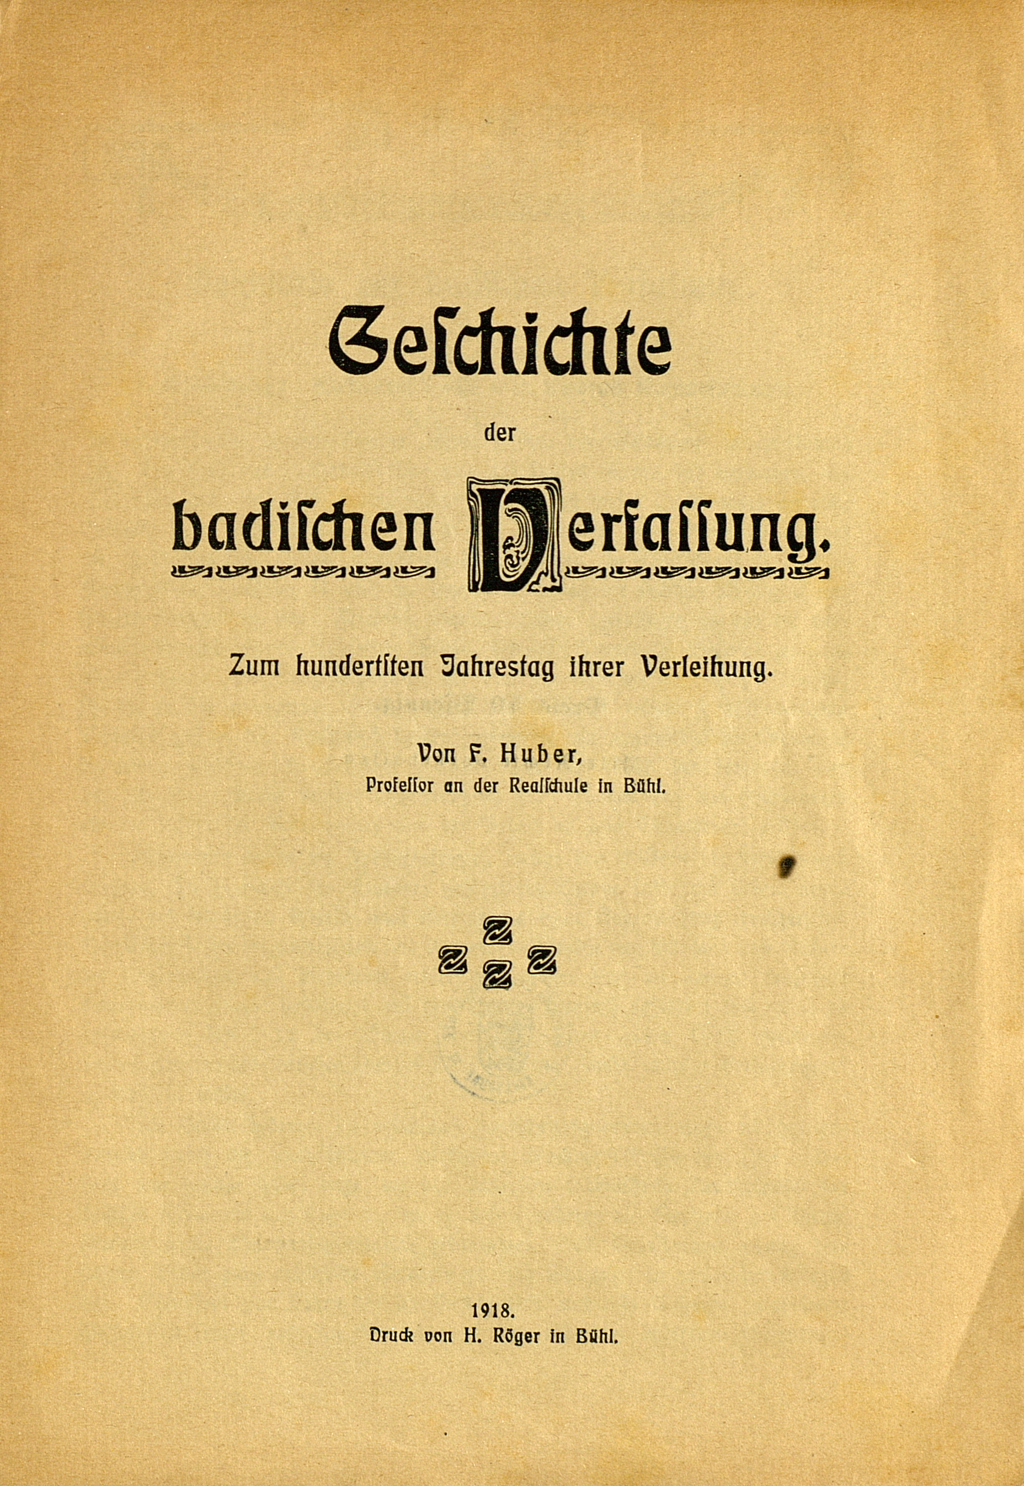 Zu sehen ist das Titelblatt von Friedrich Hubers Veröffentlichung zur Geschichte der badischen Verfassung. Das V des Wortes "Verfassung" ist typographisch hervorgehoben.